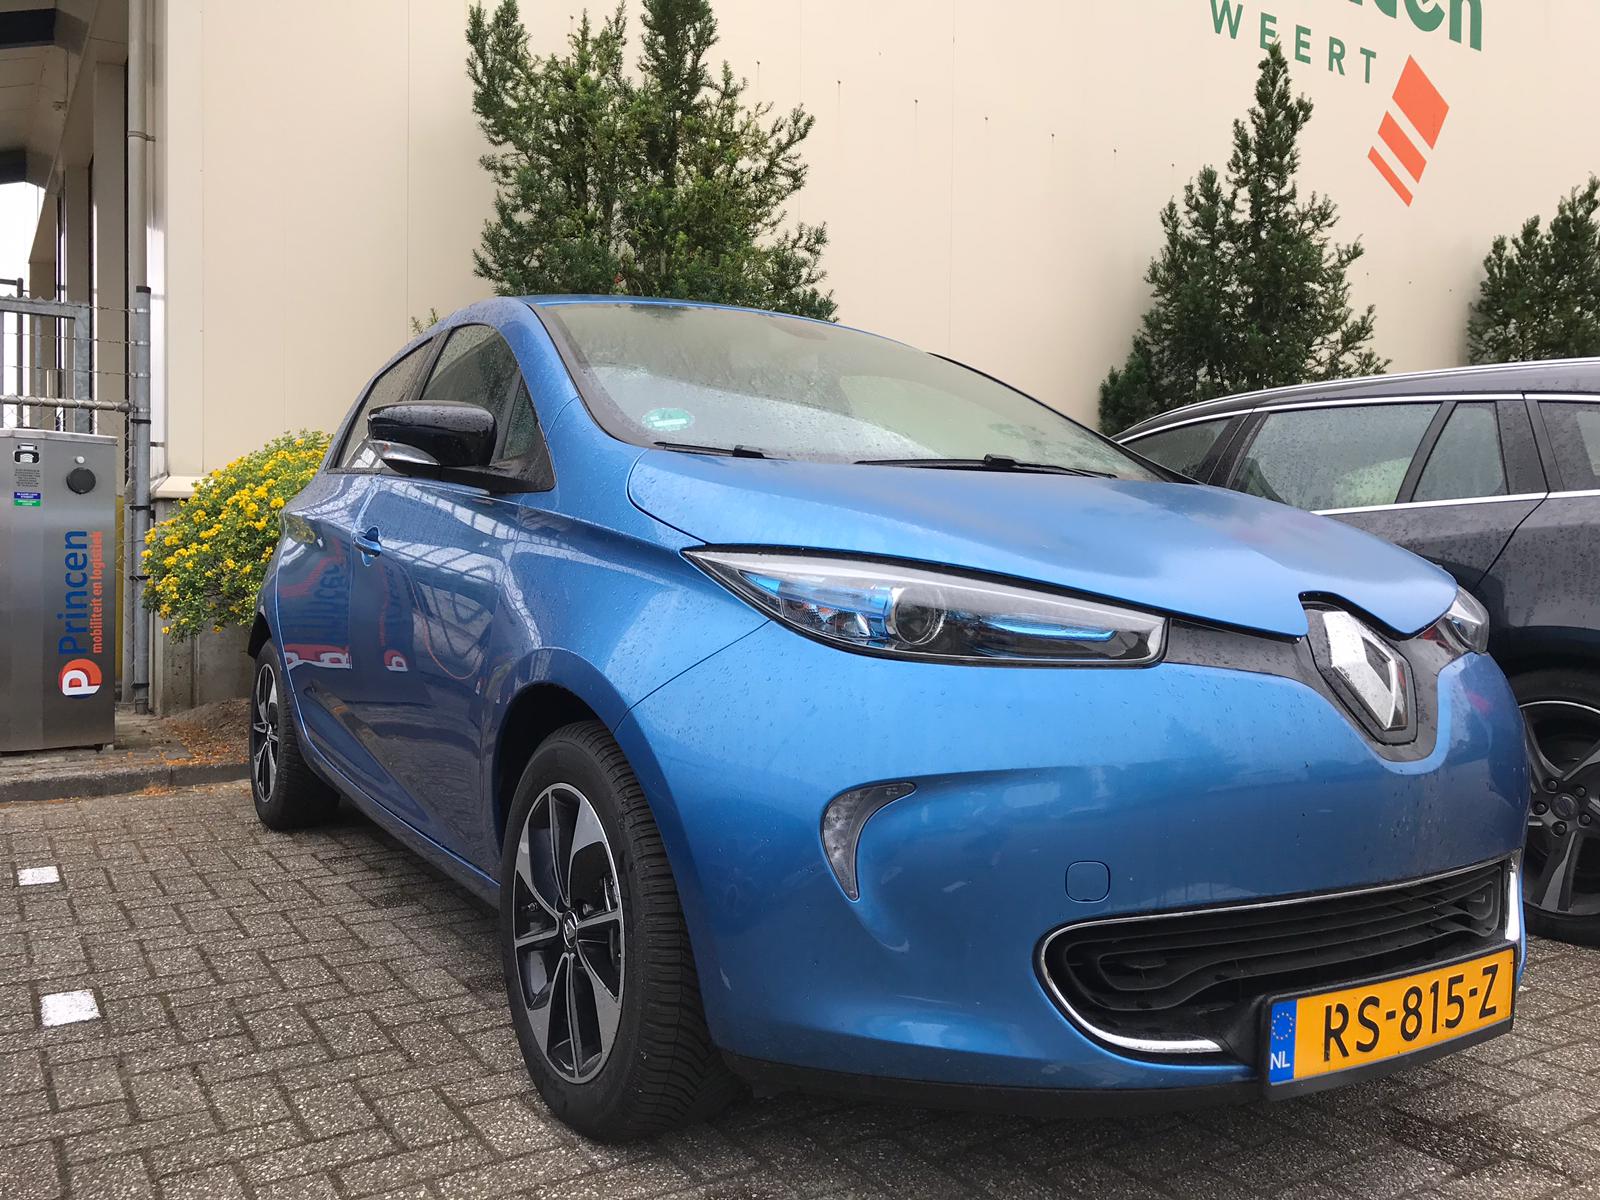 Primeur voor Limburg: eerste elektrische deelauto in Weert